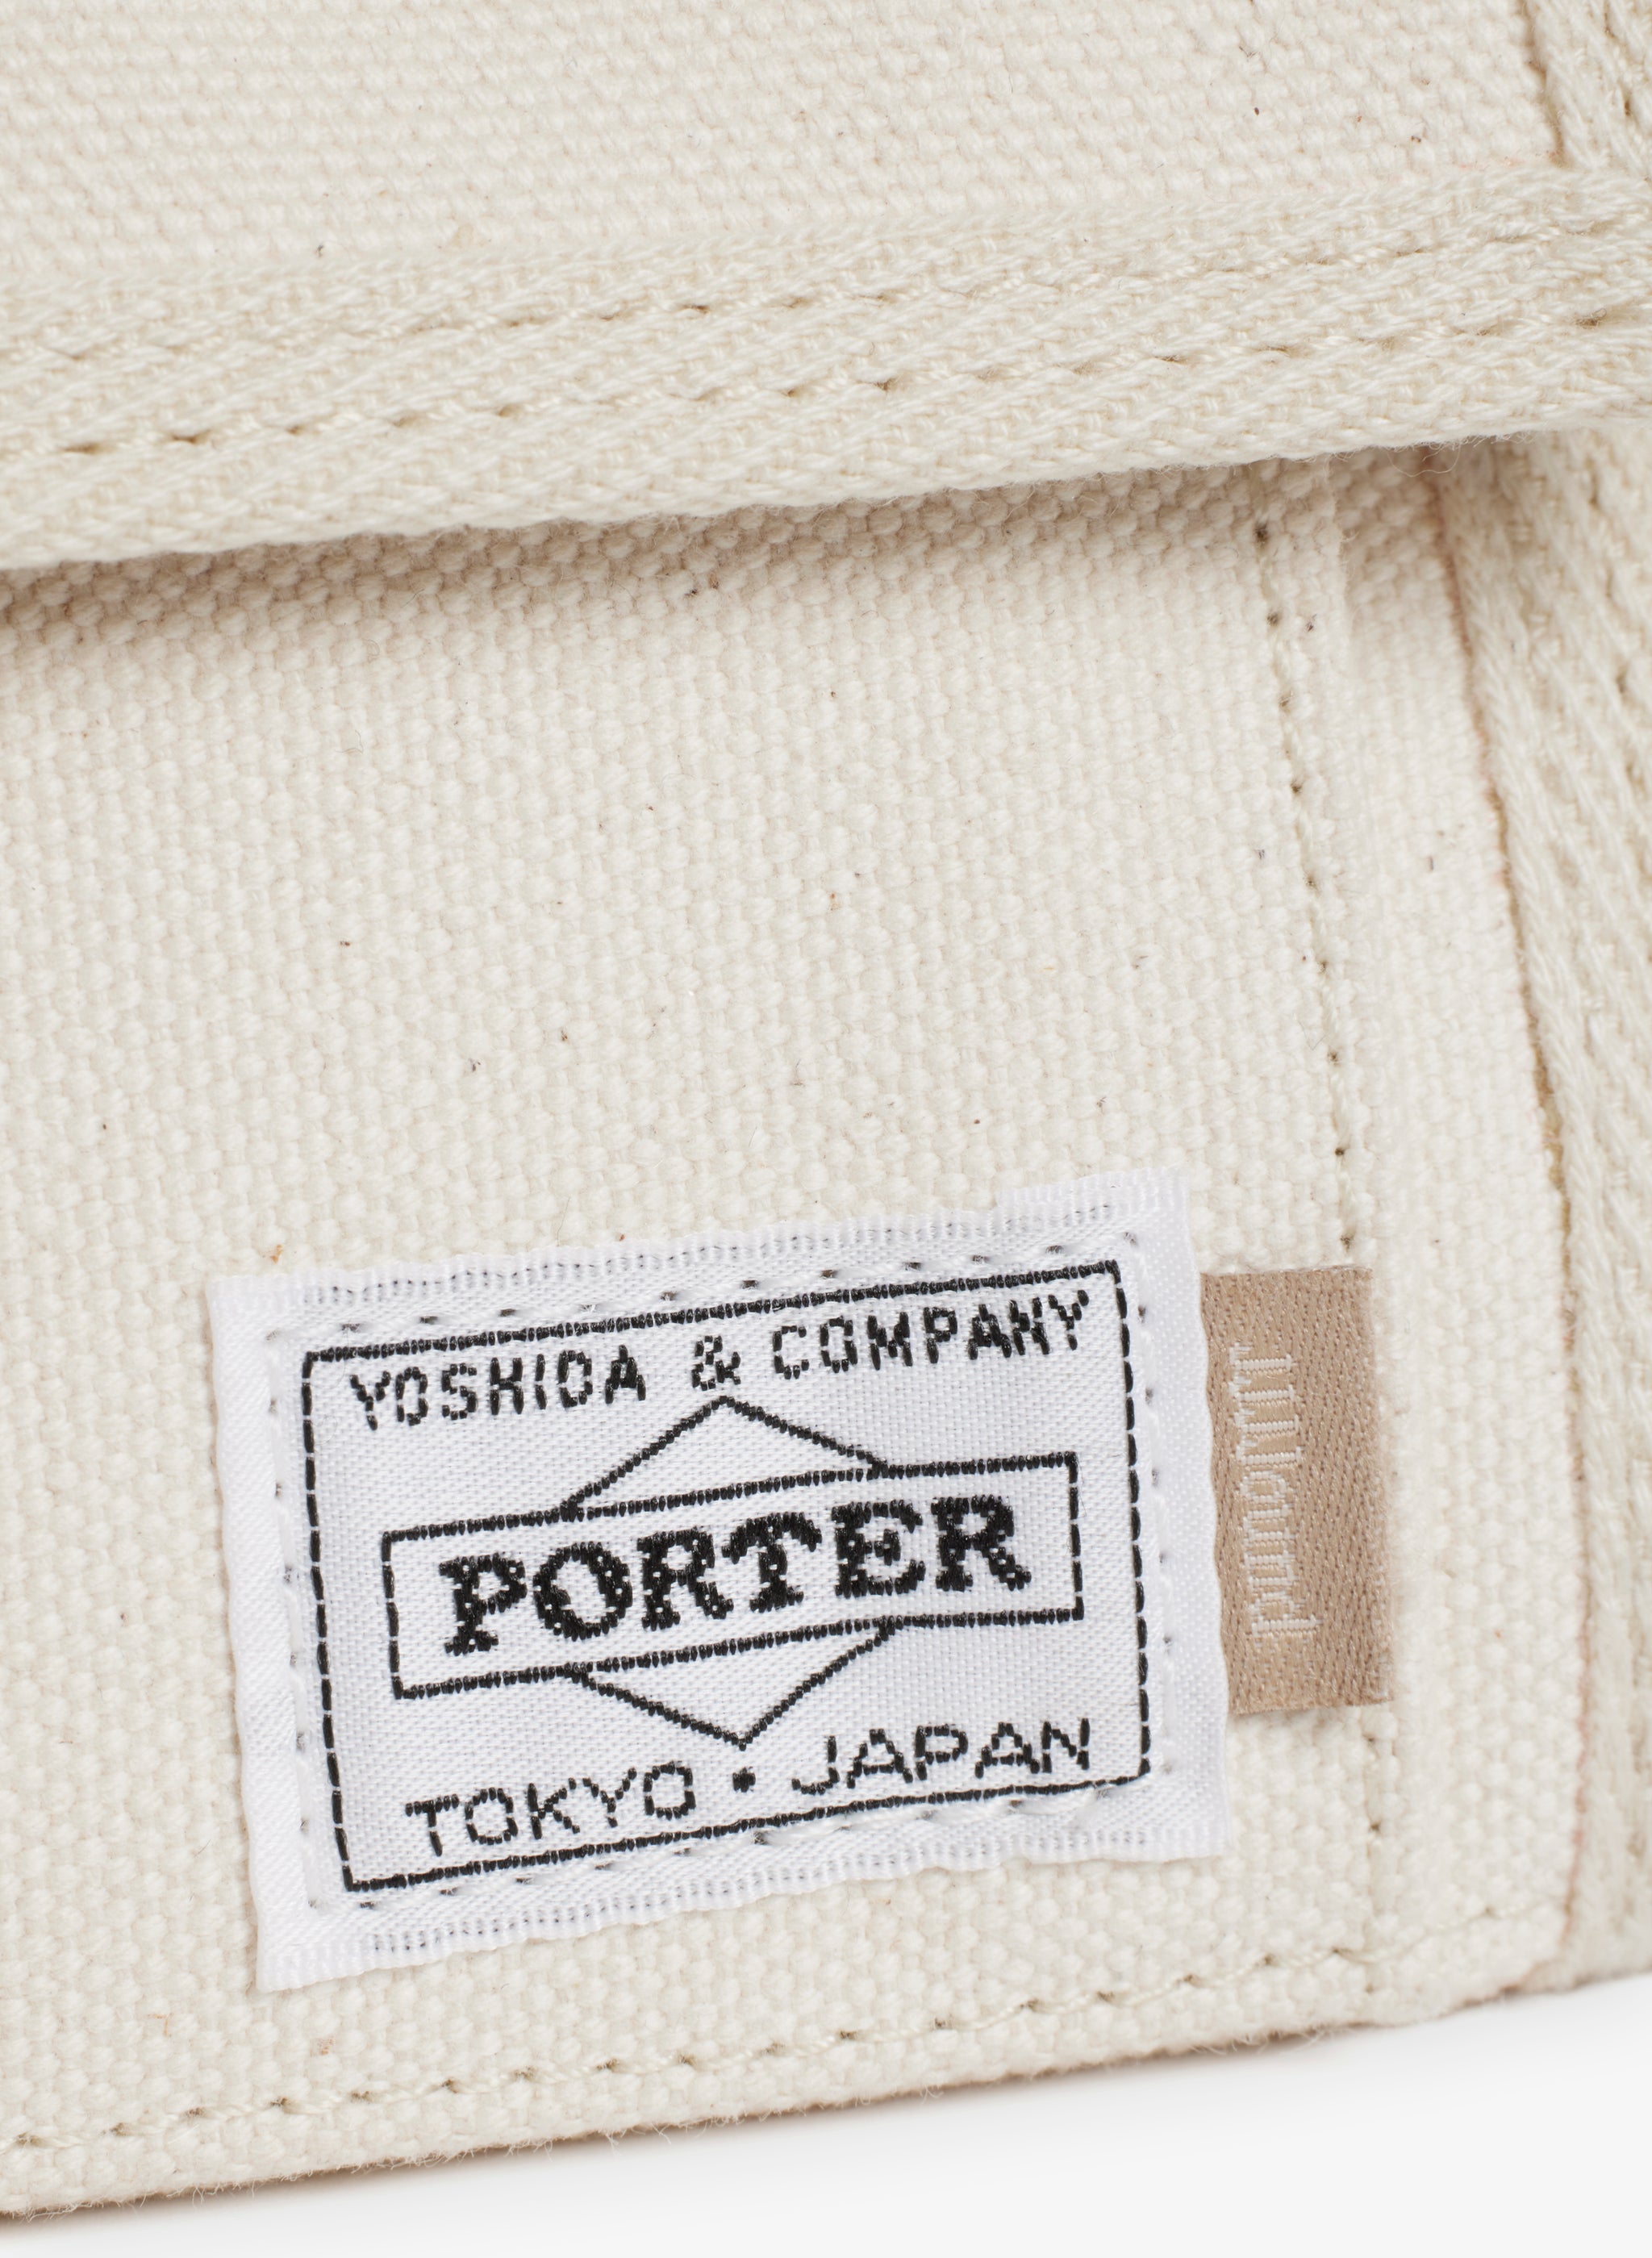 Porter Yoshida III – JJJJound